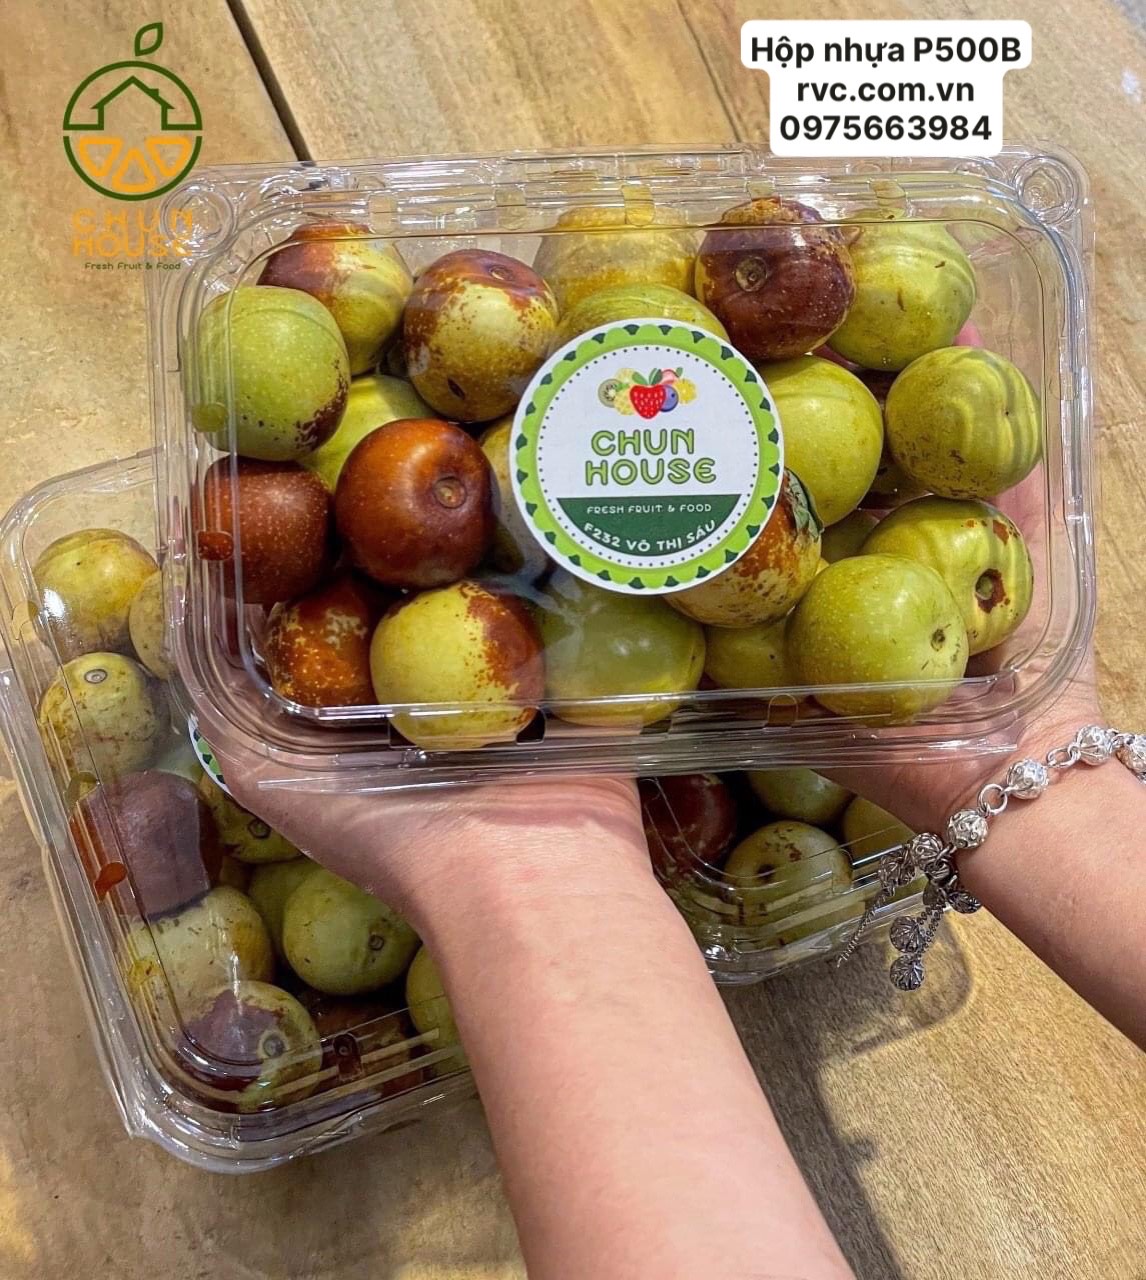 Nhà cung cấp hộp nhựa trái cây đảm bảo chất lượng  8279569_03d28d47bde7b8f6325e08c9d54f55d5